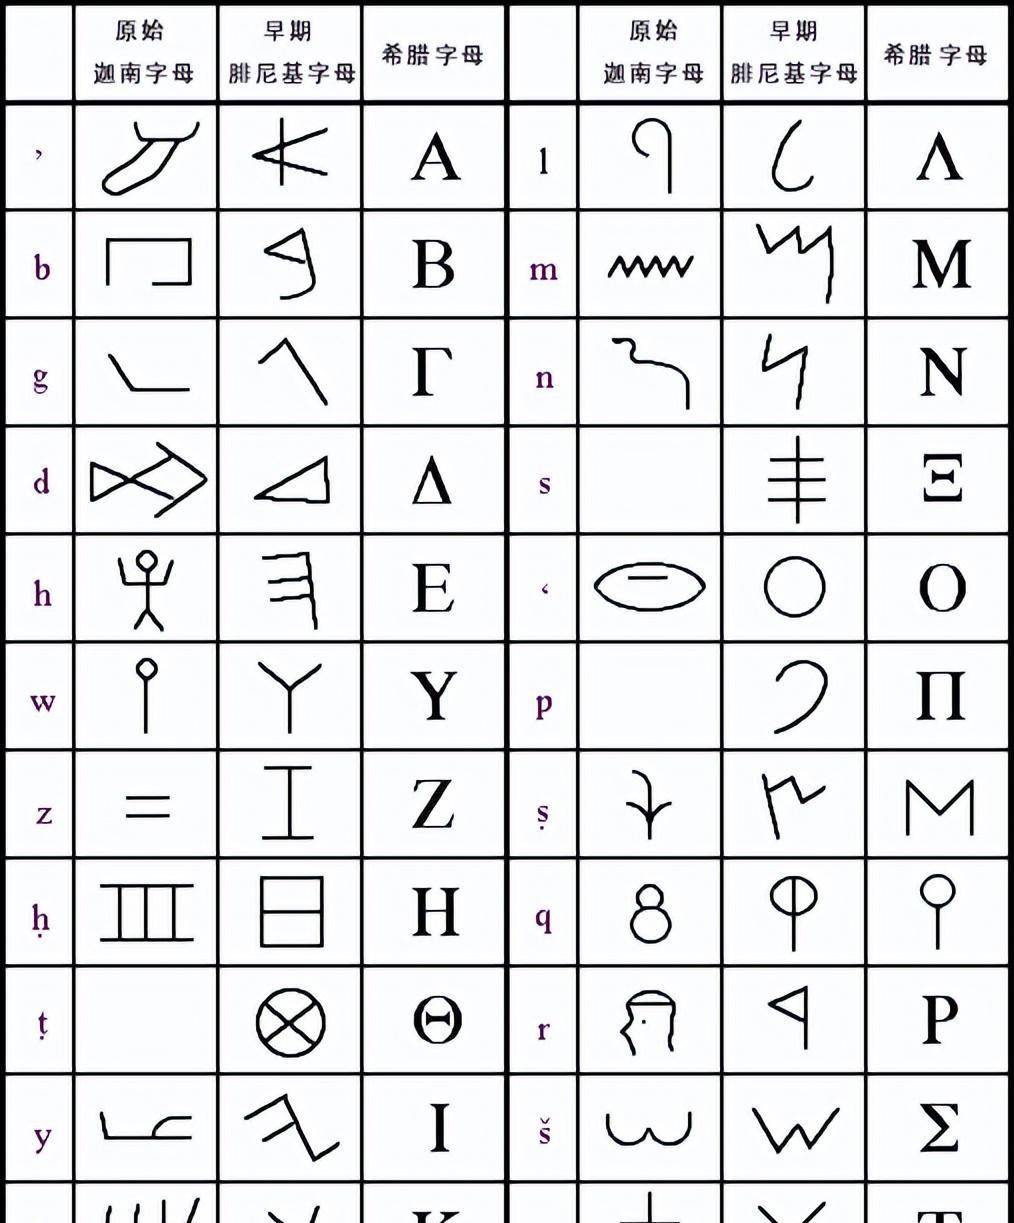 对比根据现在学者们的研究,基本可以肯定腓尼基字母是从爱琴海的岛屿